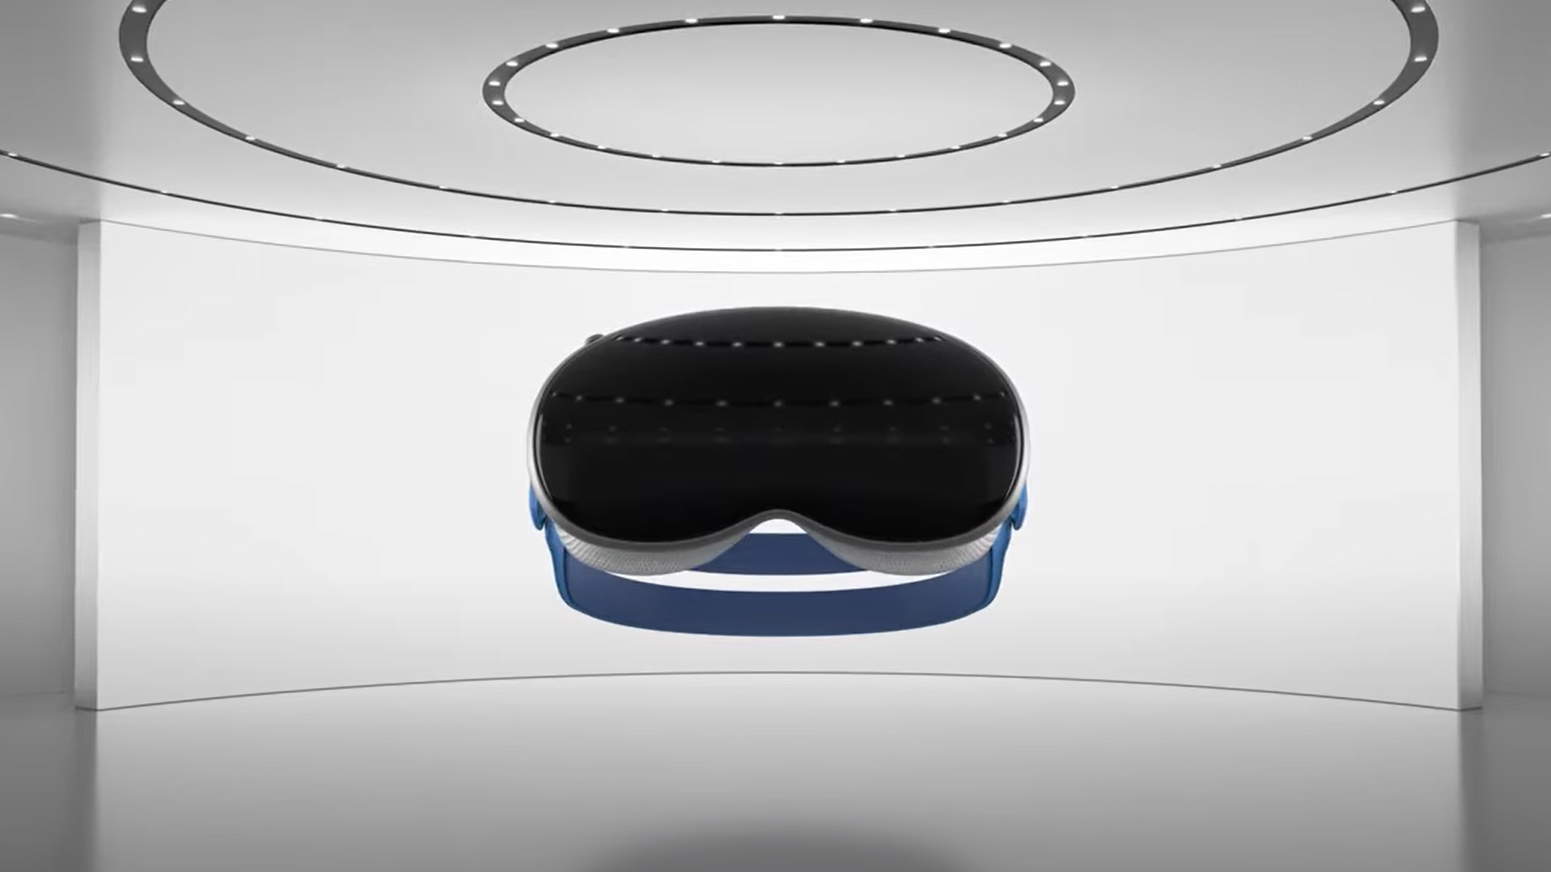 Representaciones de los rumoreados auriculares Apple VR / AR